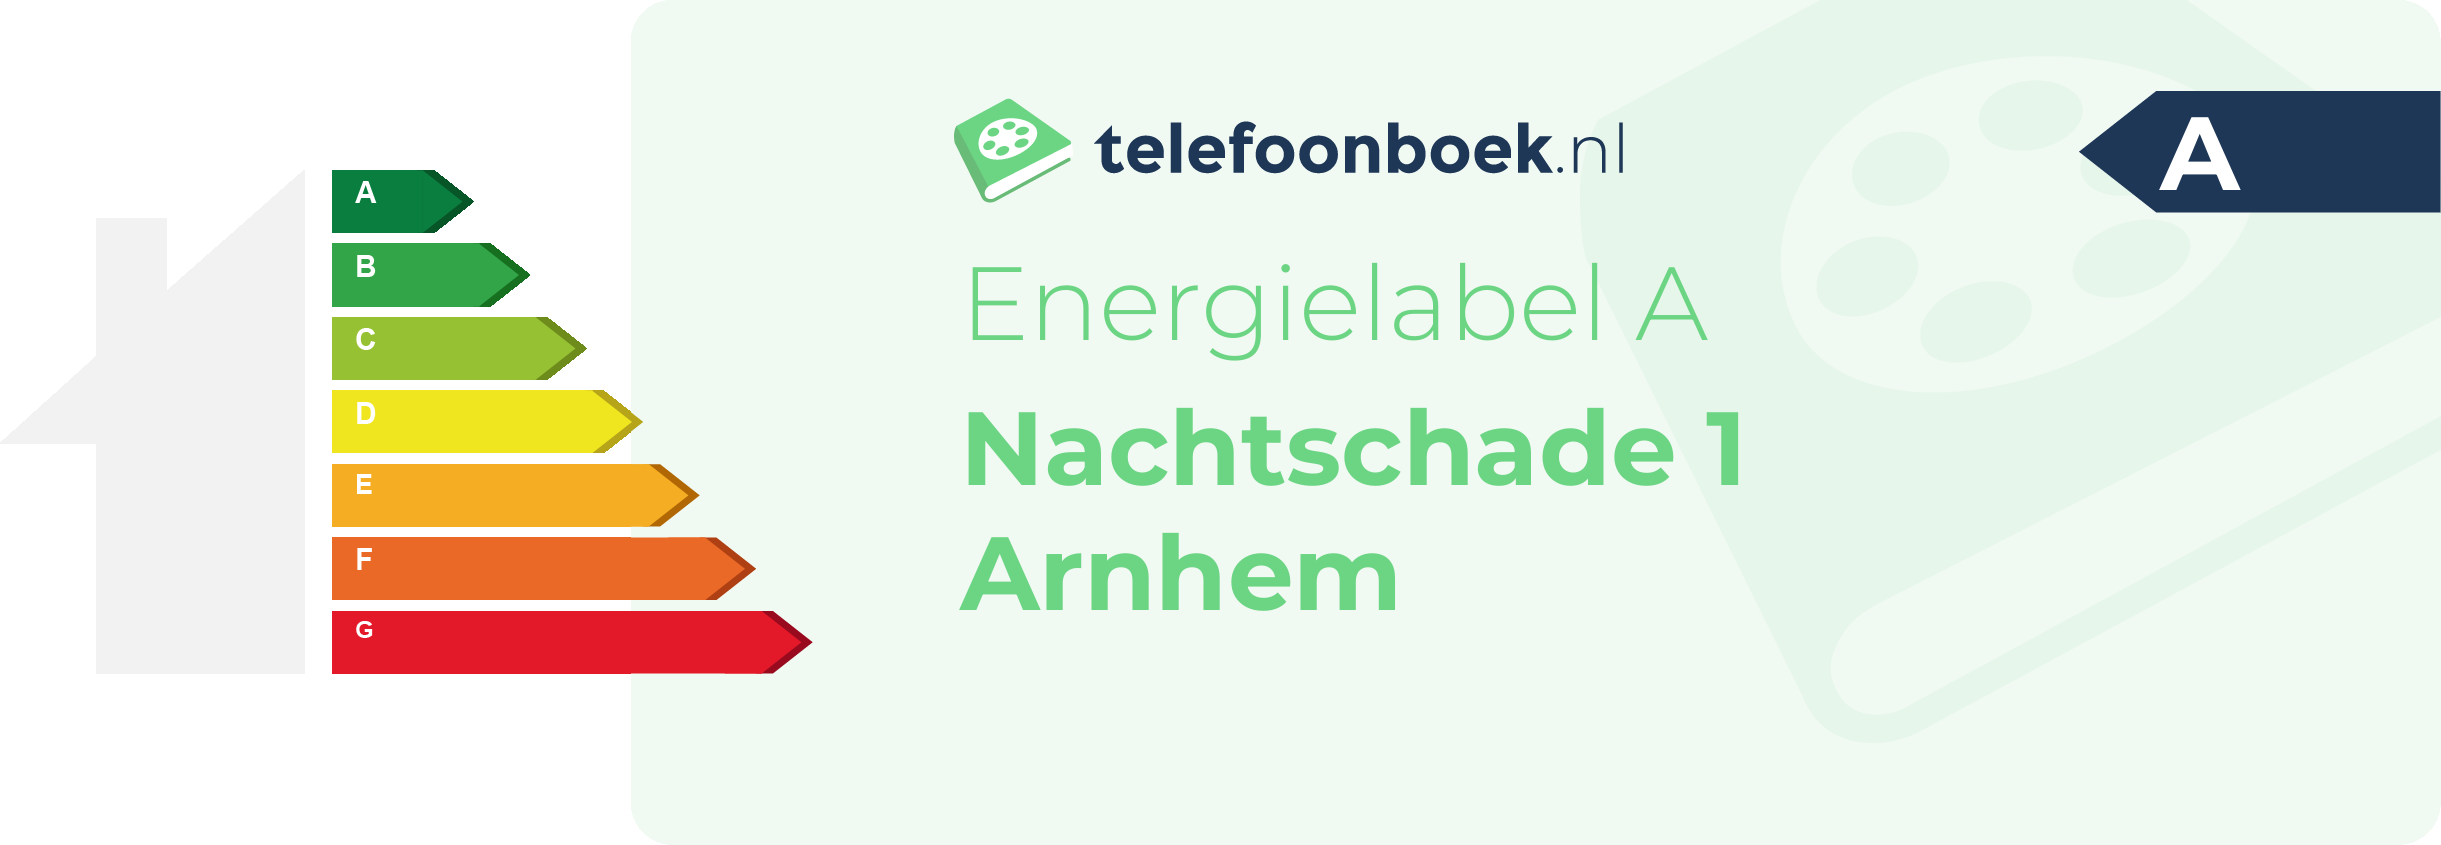 Energielabel Nachtschade 1 Arnhem